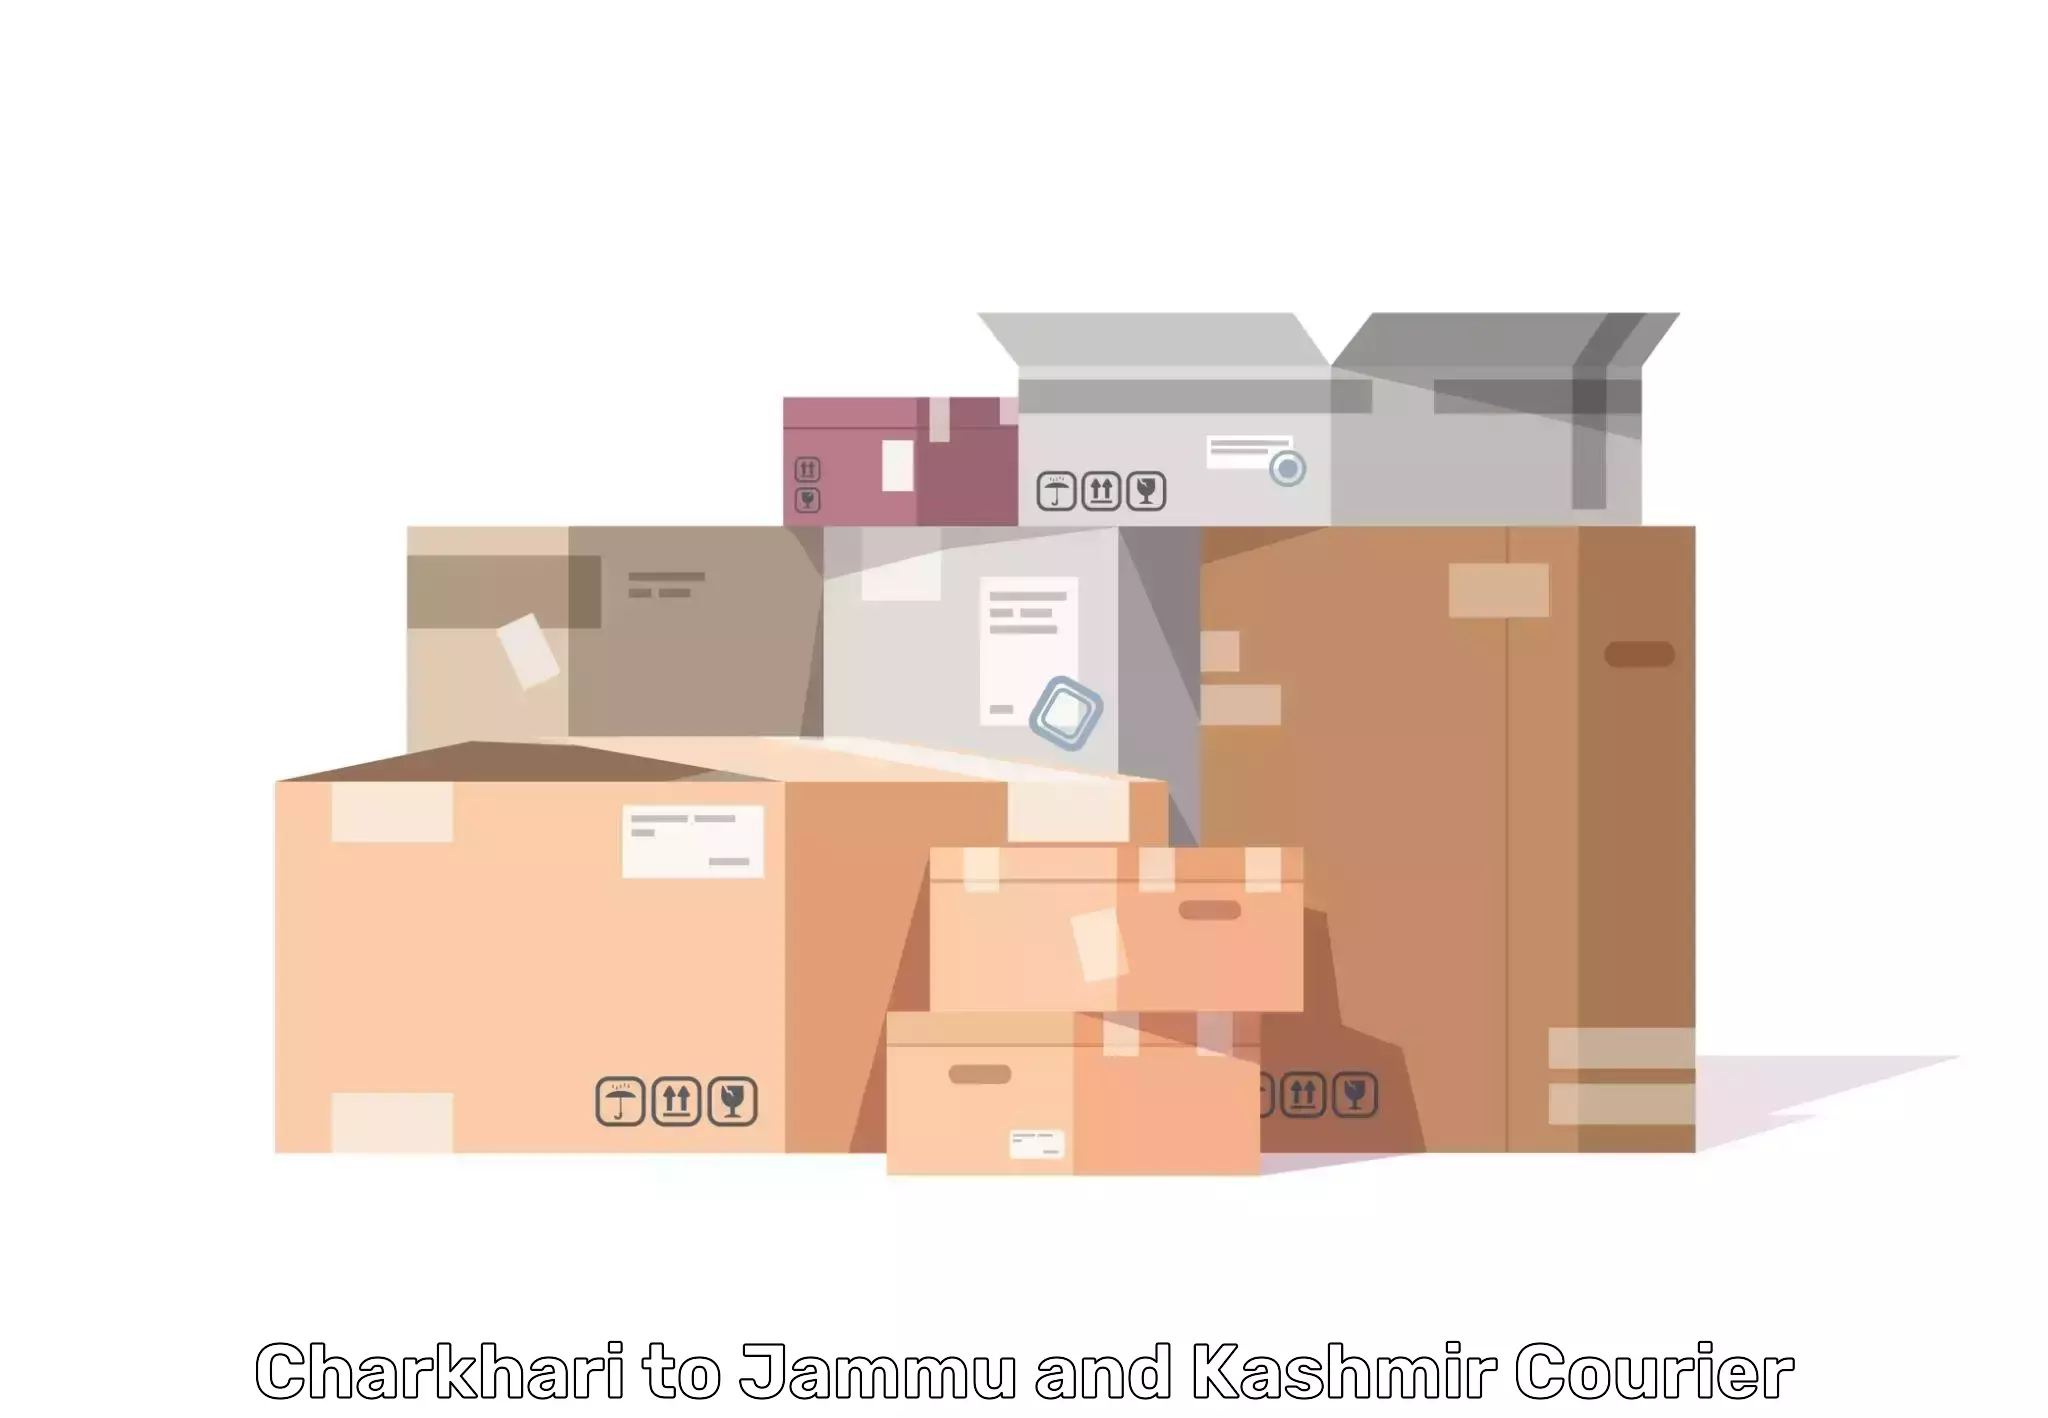 Furniture moving strategies in Charkhari to Srinagar Kashmir